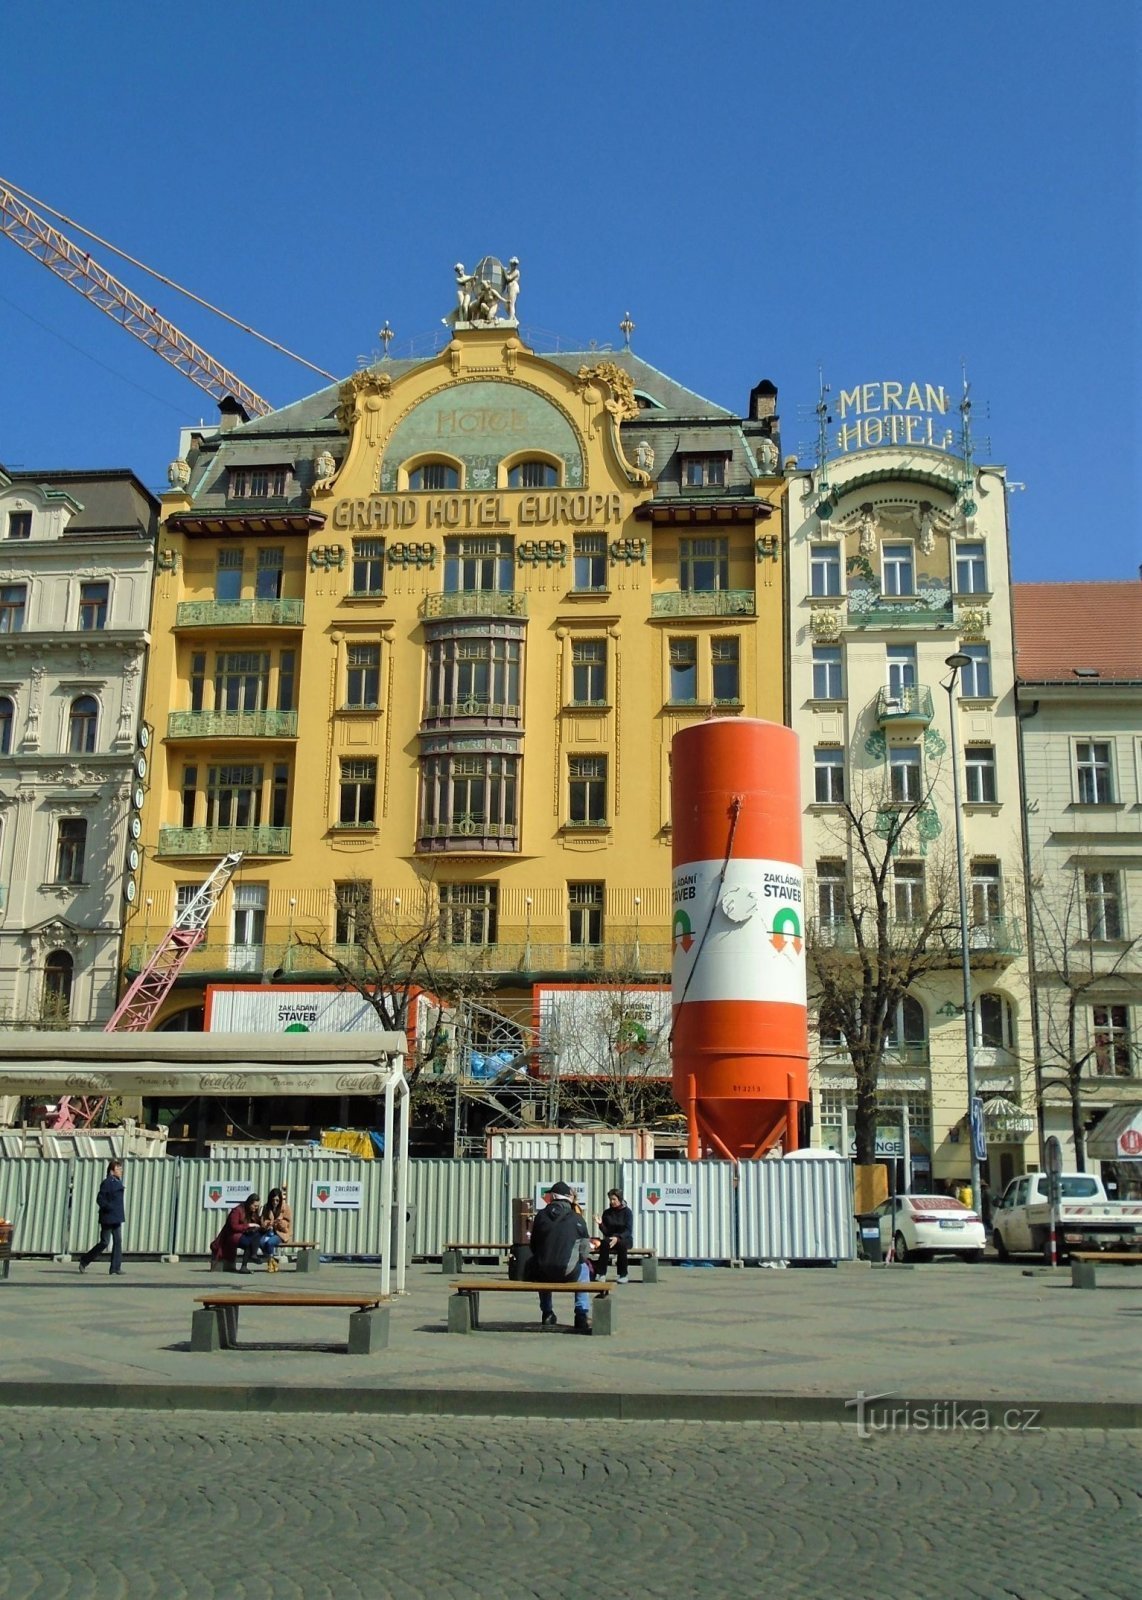 Grand Hotel Evropa și Hotel Meran (Praga, 1.4.2019 aprilie XNUMX)